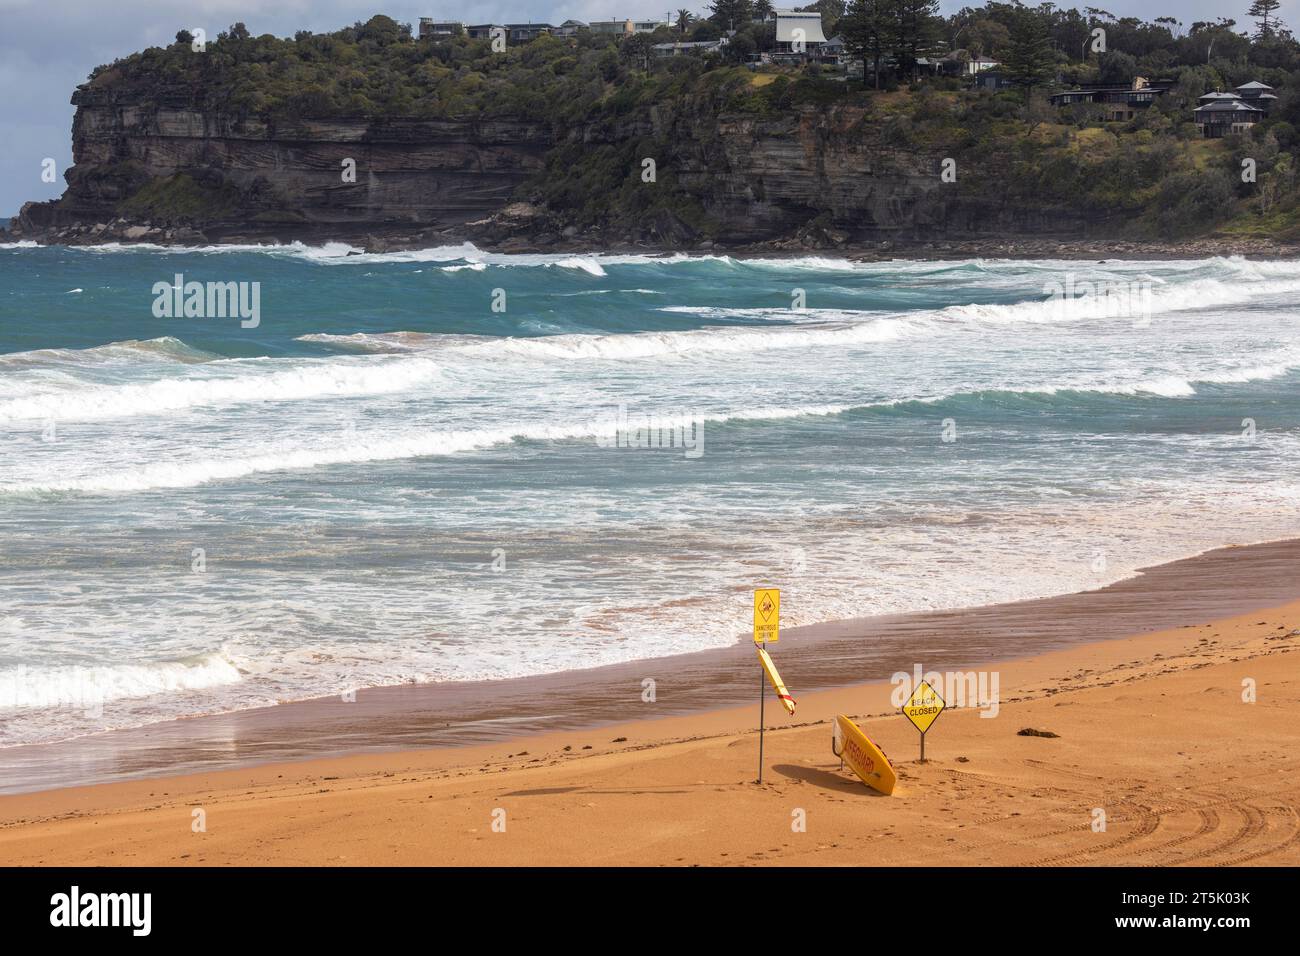 Plage fermée courants dangereux et panneaux d'avertissement de surf, Newport Beach, Sydney, NSW, Australie Banque D'Images